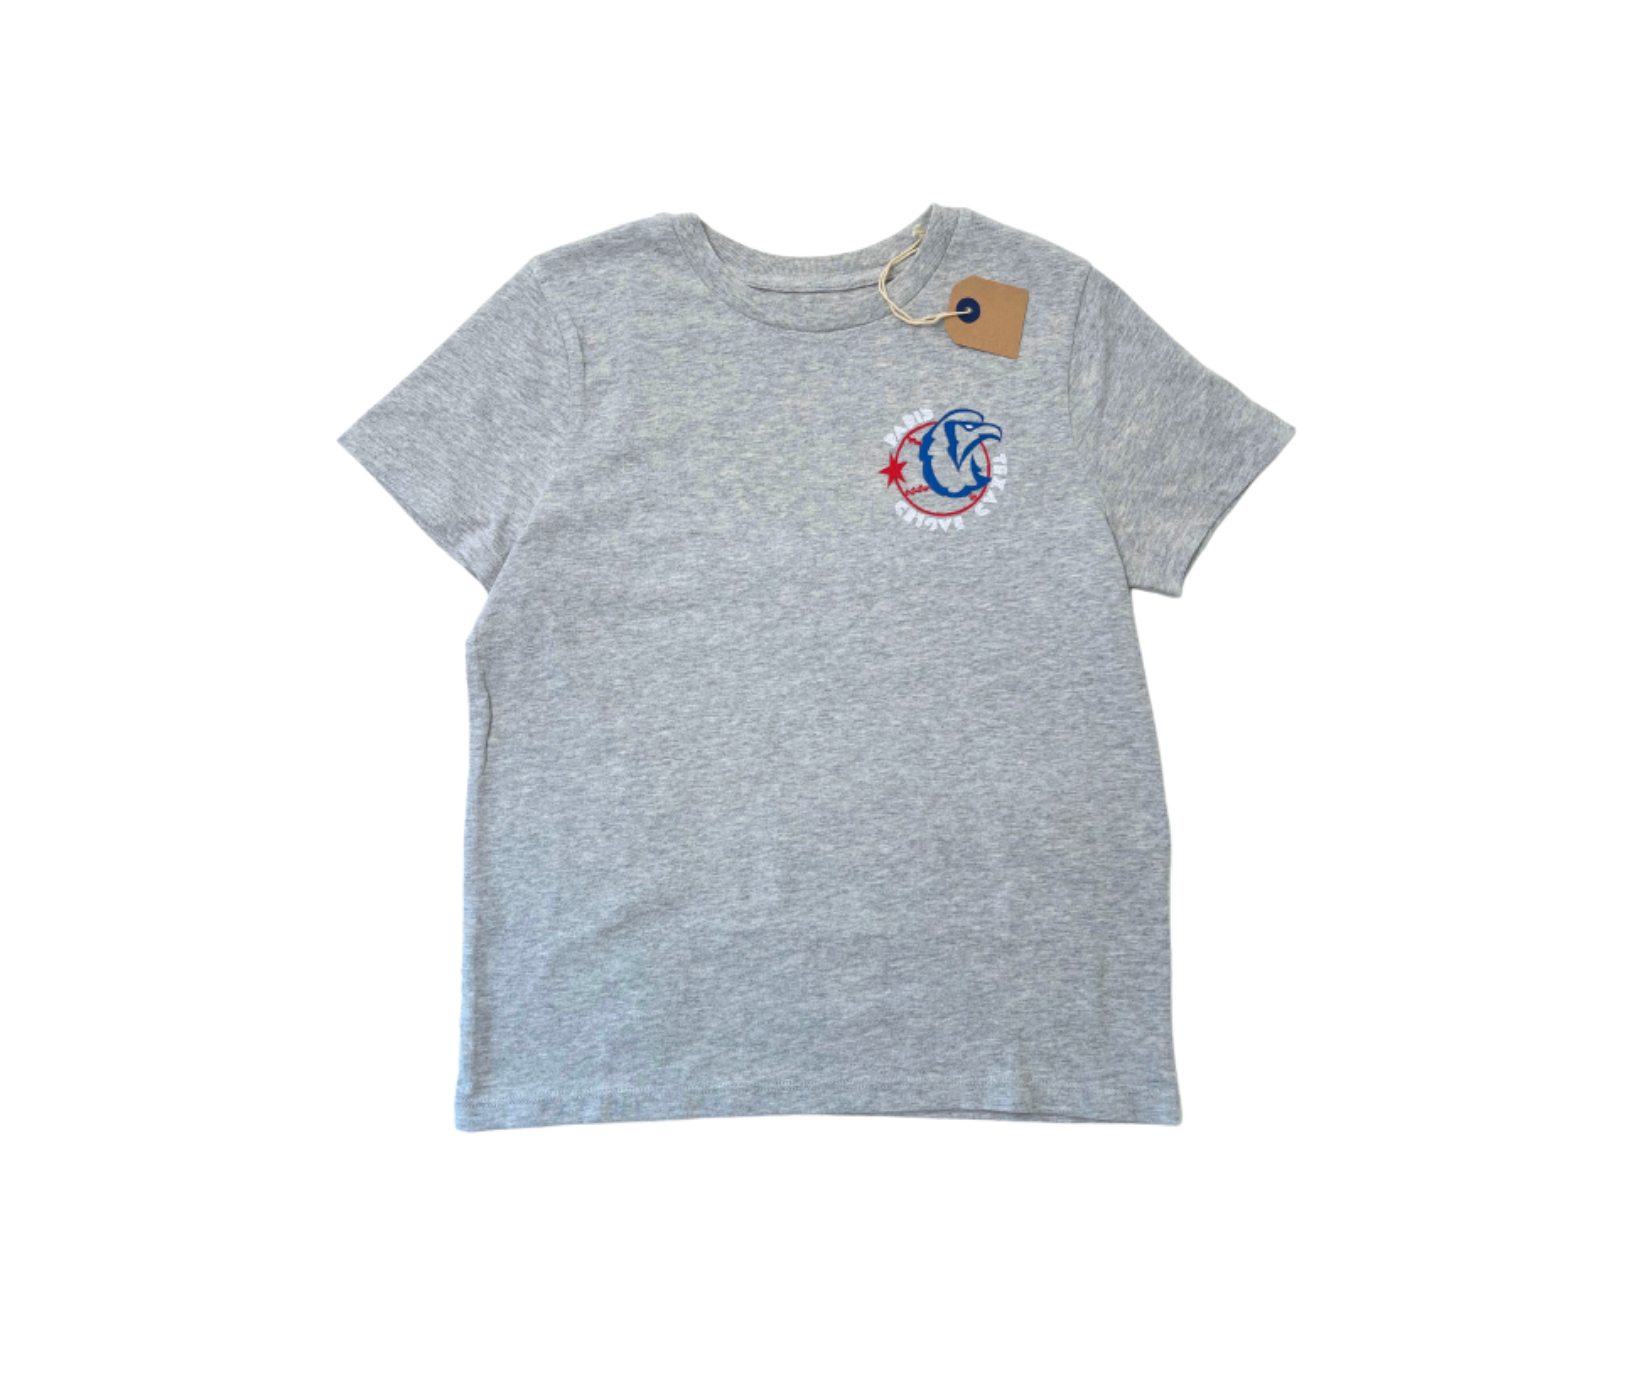 BELLEROSE - T-shirt gris "Texas Eagles" + écritures dos - 8 ans